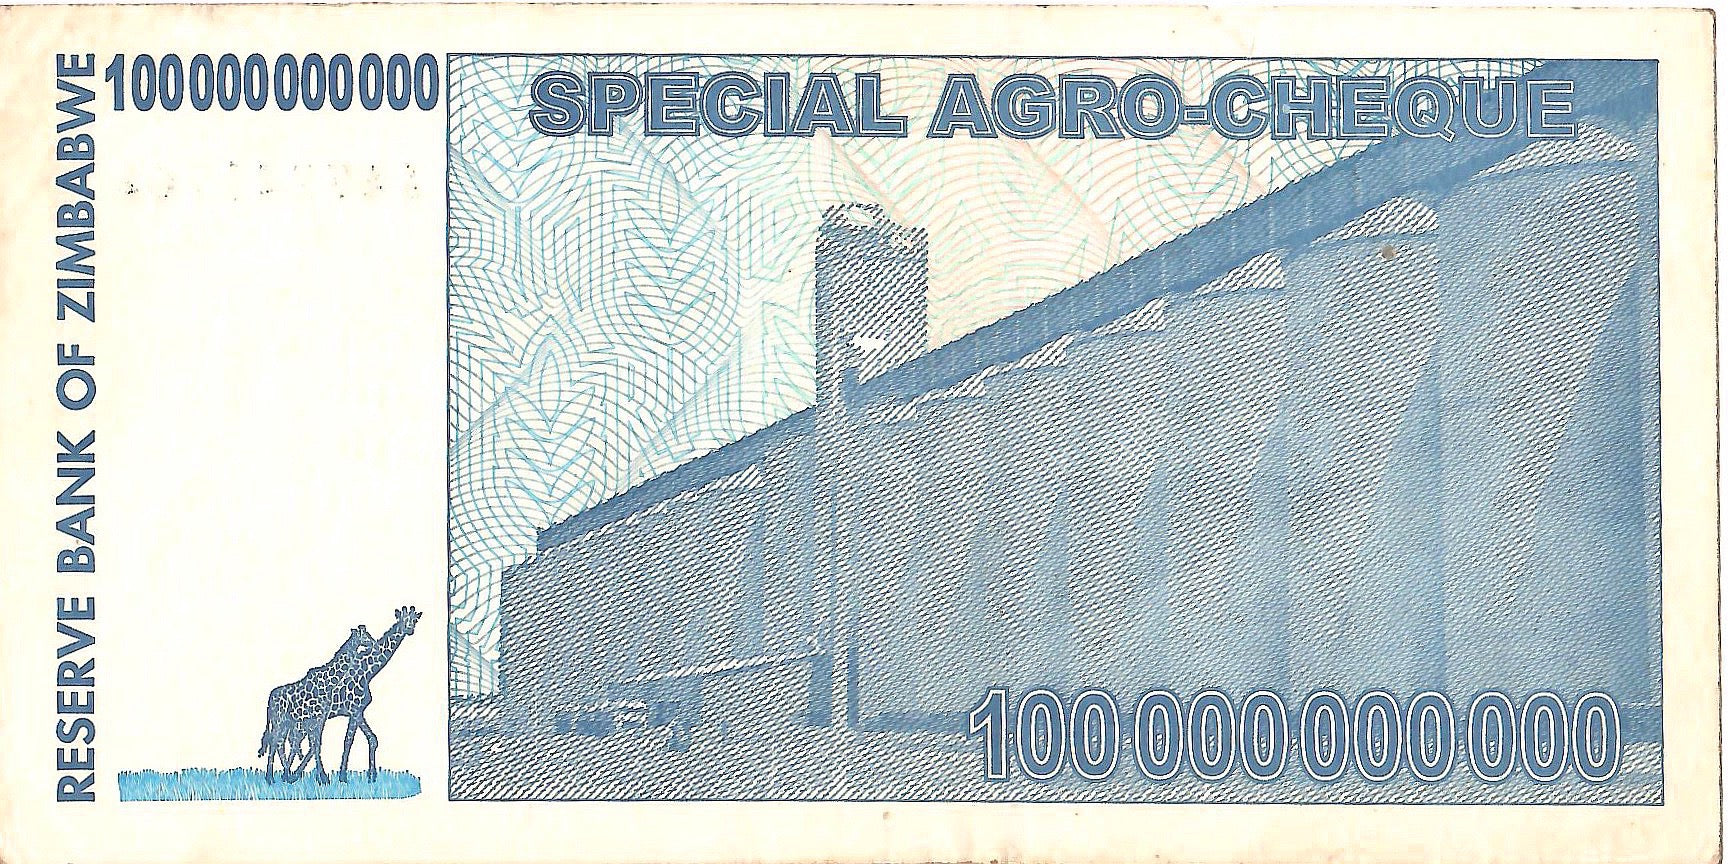 Zimbabwe 100 Billion Argo Cheque, 2008, UNC